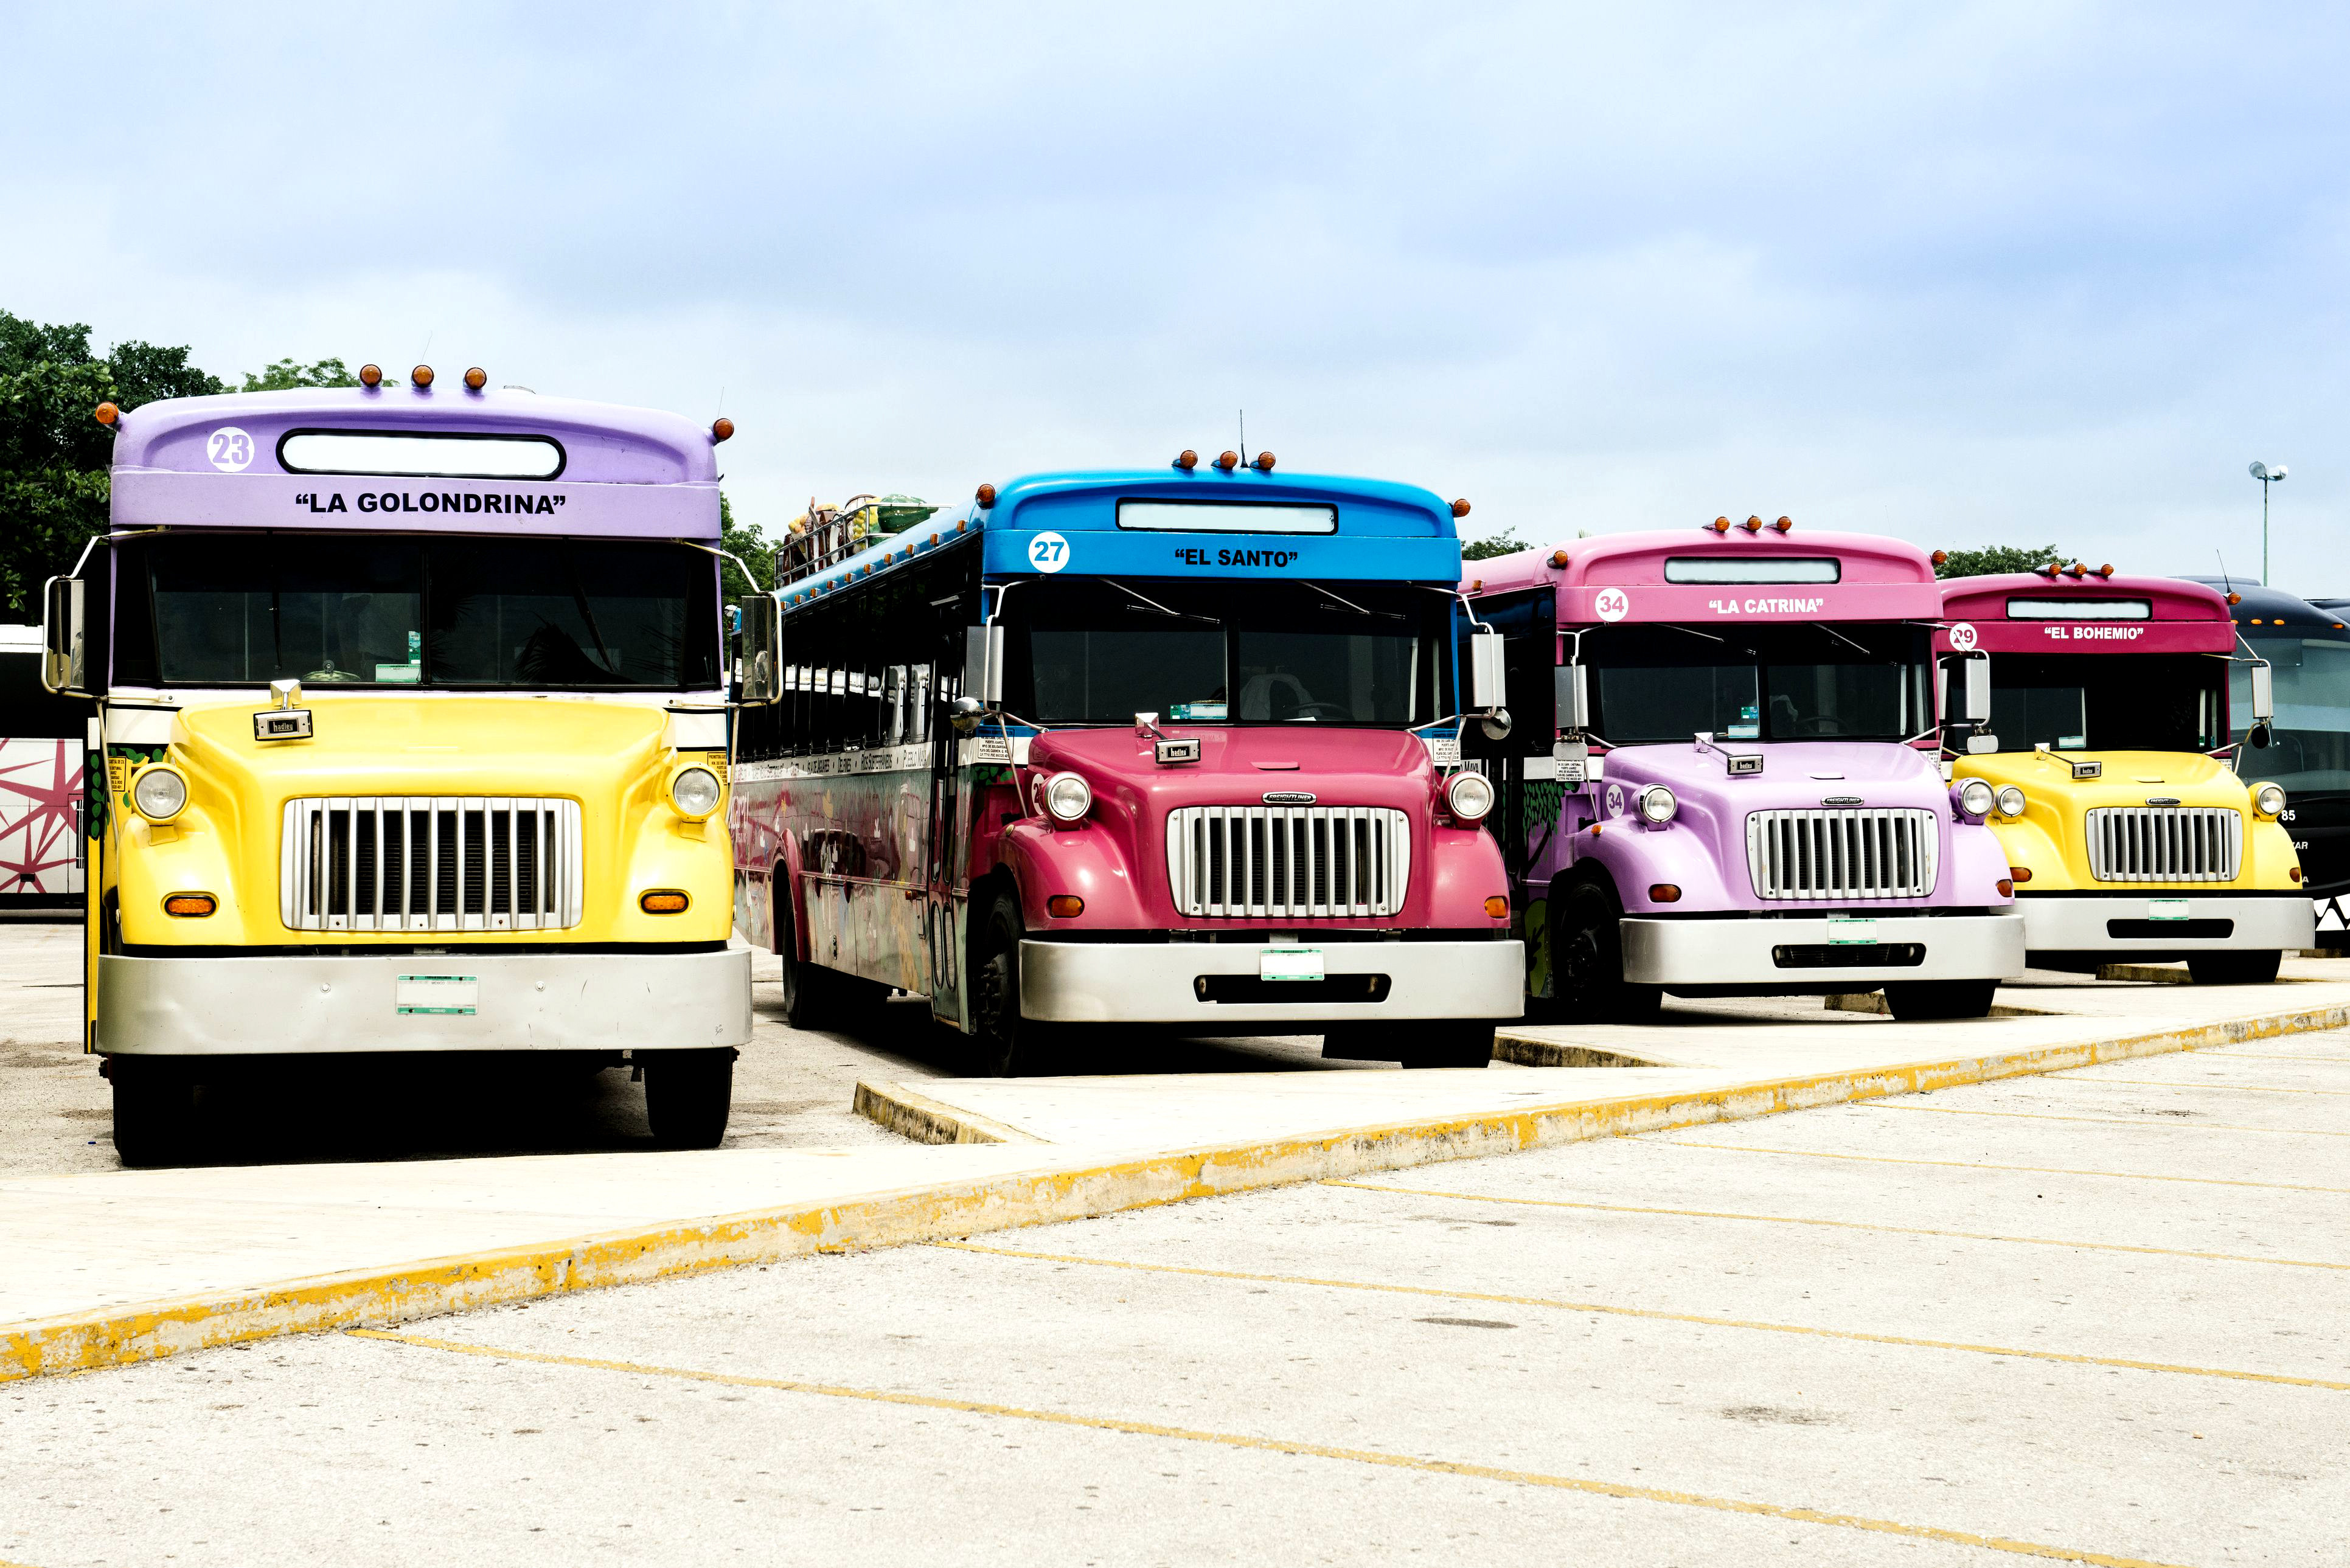 Междугородние автобусы, один из способов передвижения по Мексике